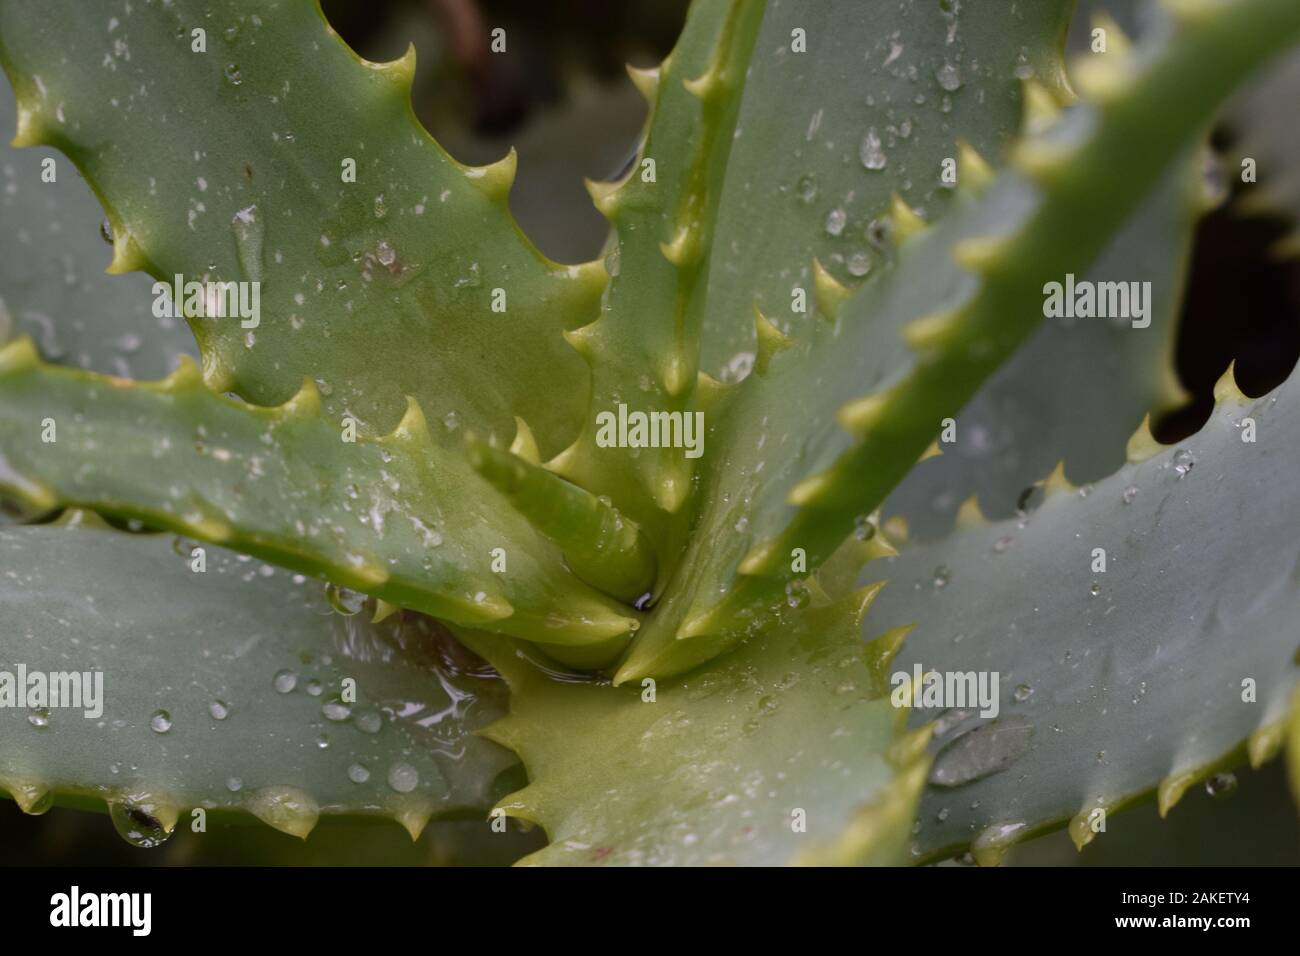 Wet Aloe Vera Close-Up at Angle Stock Photo